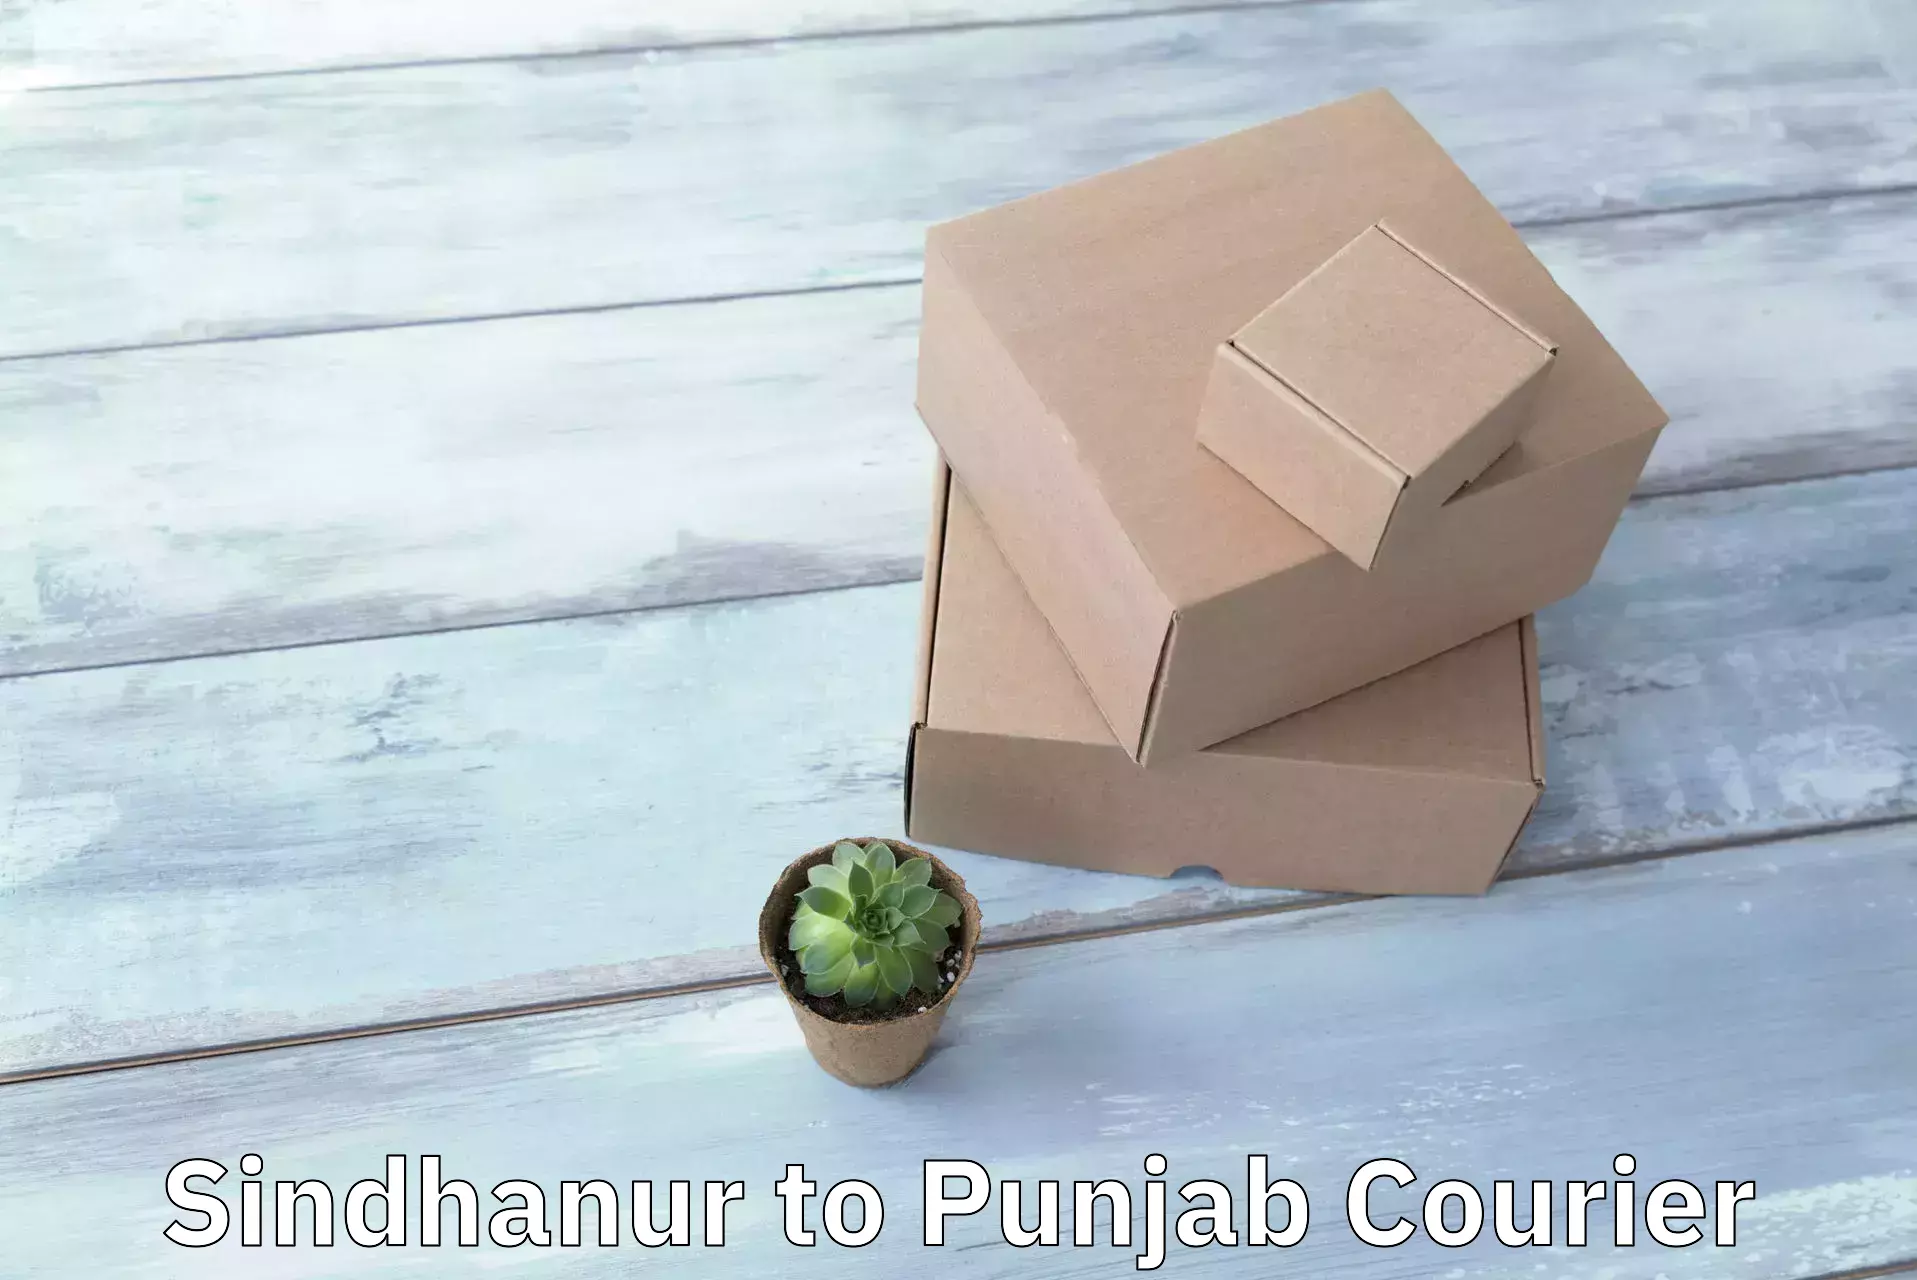 Door-to-door shipment Sindhanur to Punjab